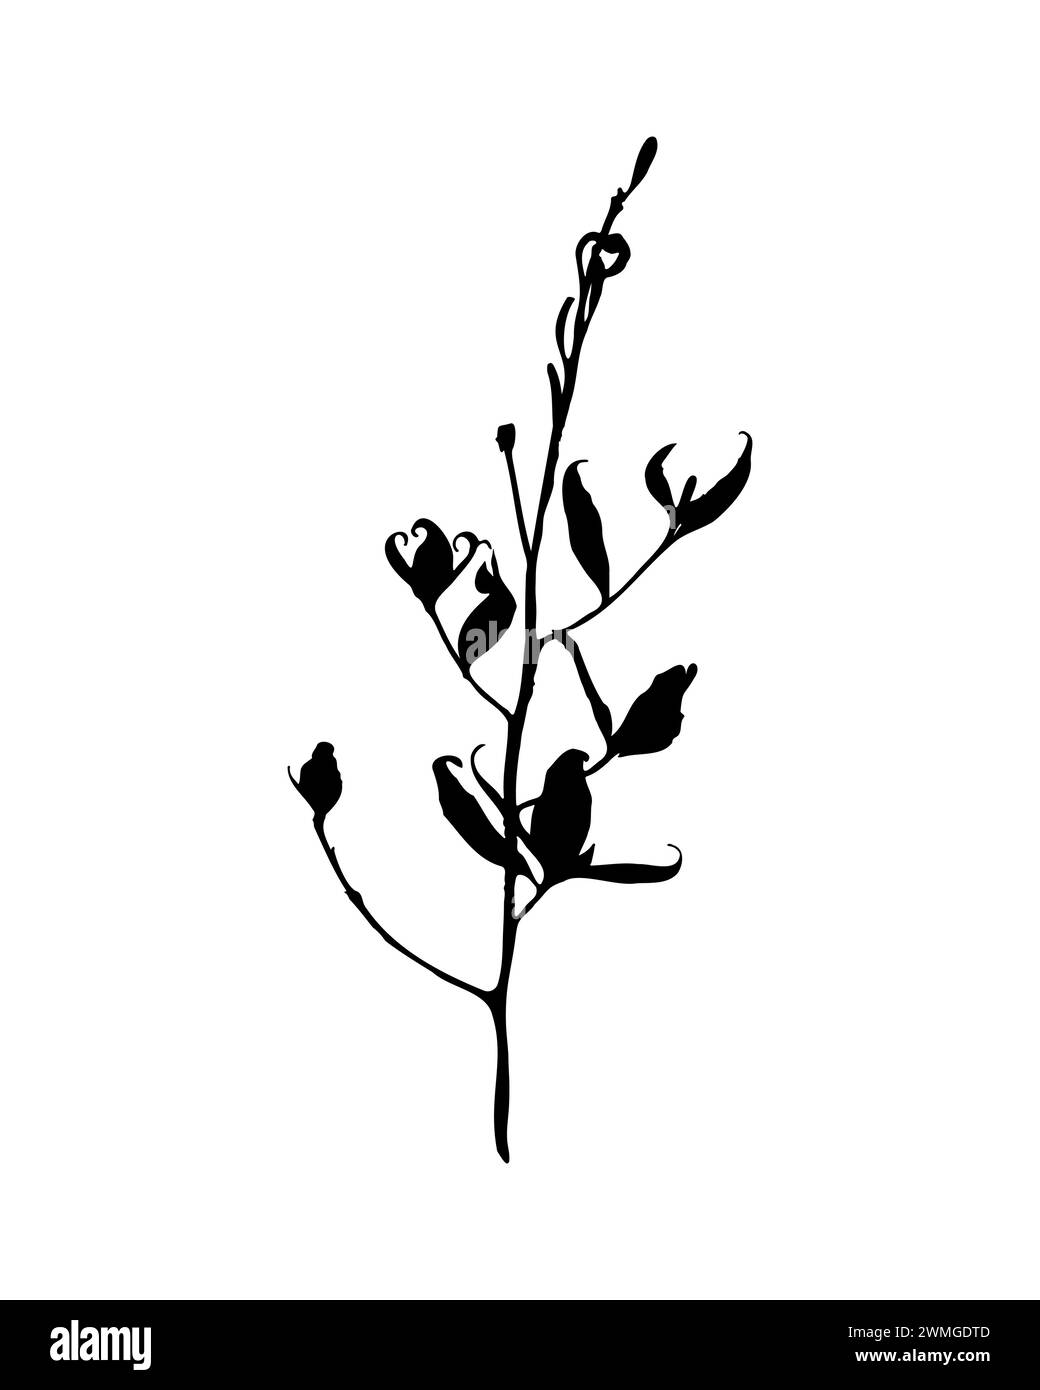 Silhouette délicate de plante avec une tige élégante avec des feuilles, présentée dans un contraste frappant sur fond blanc pur, capturant le simpliste Illustration de Vecteur